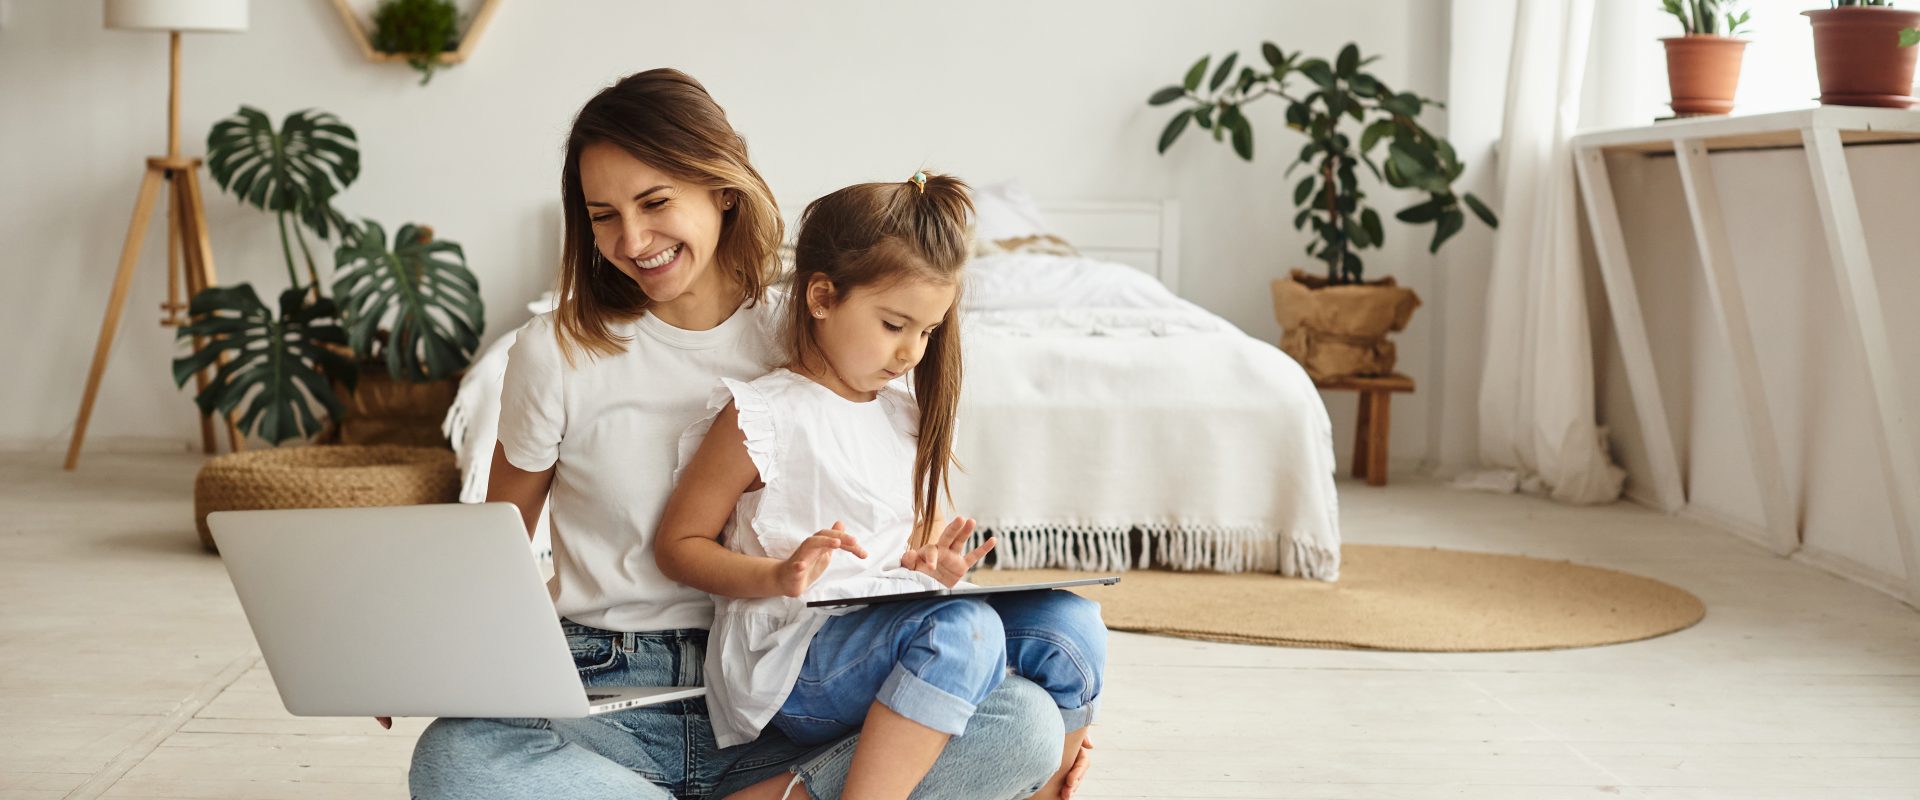 Współczesna mama - czy naprawdę musi być idealna? Mama pracująca w domu - siedzi na podłodze w sypialni, na jednym kolanie trzyma laptopa, na drugim kolanie siedzi jej córka o rysuje.